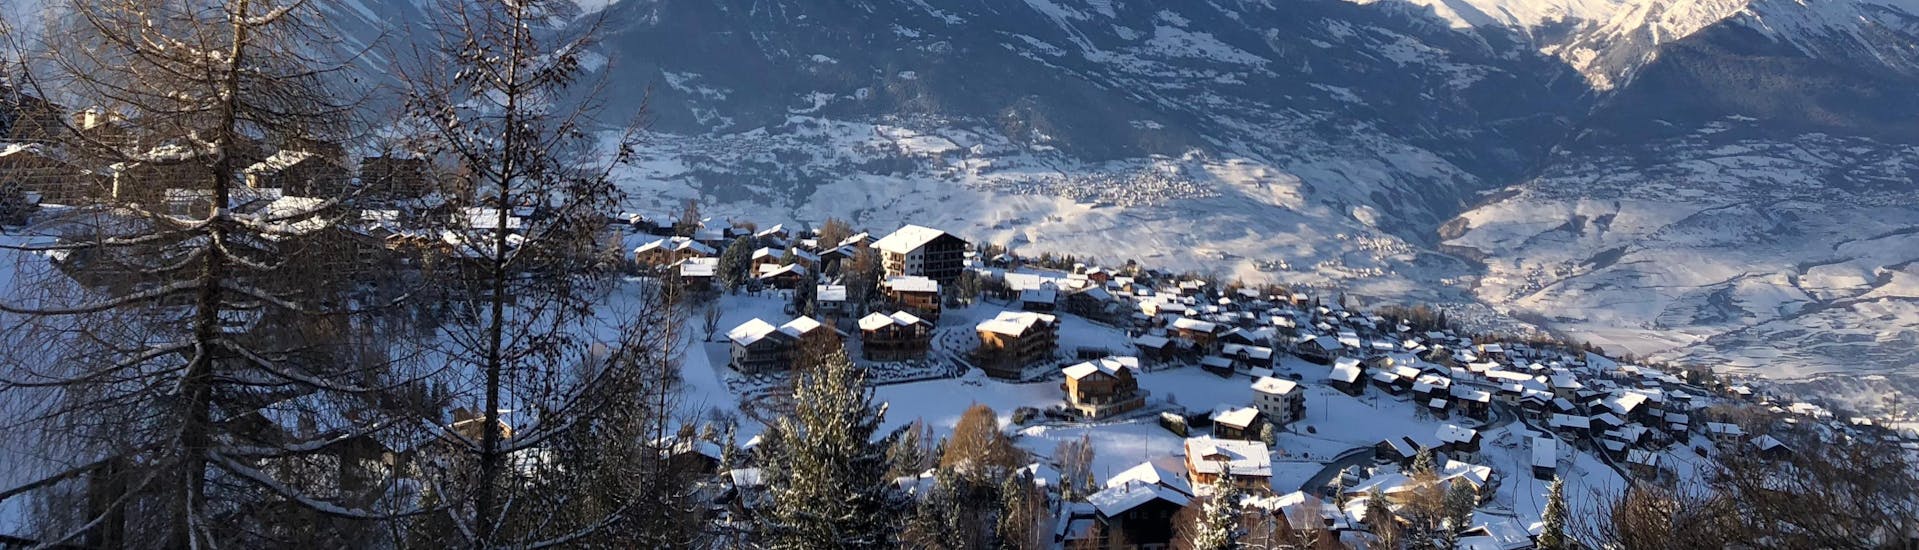 Ein Blick auf das Skigebiet Nendaz-Siviez, einer beliebten Destination in der französischen Schweiz, wo Besucher bei einer der örtlichen Skischulen einen Skikurs buchen können.